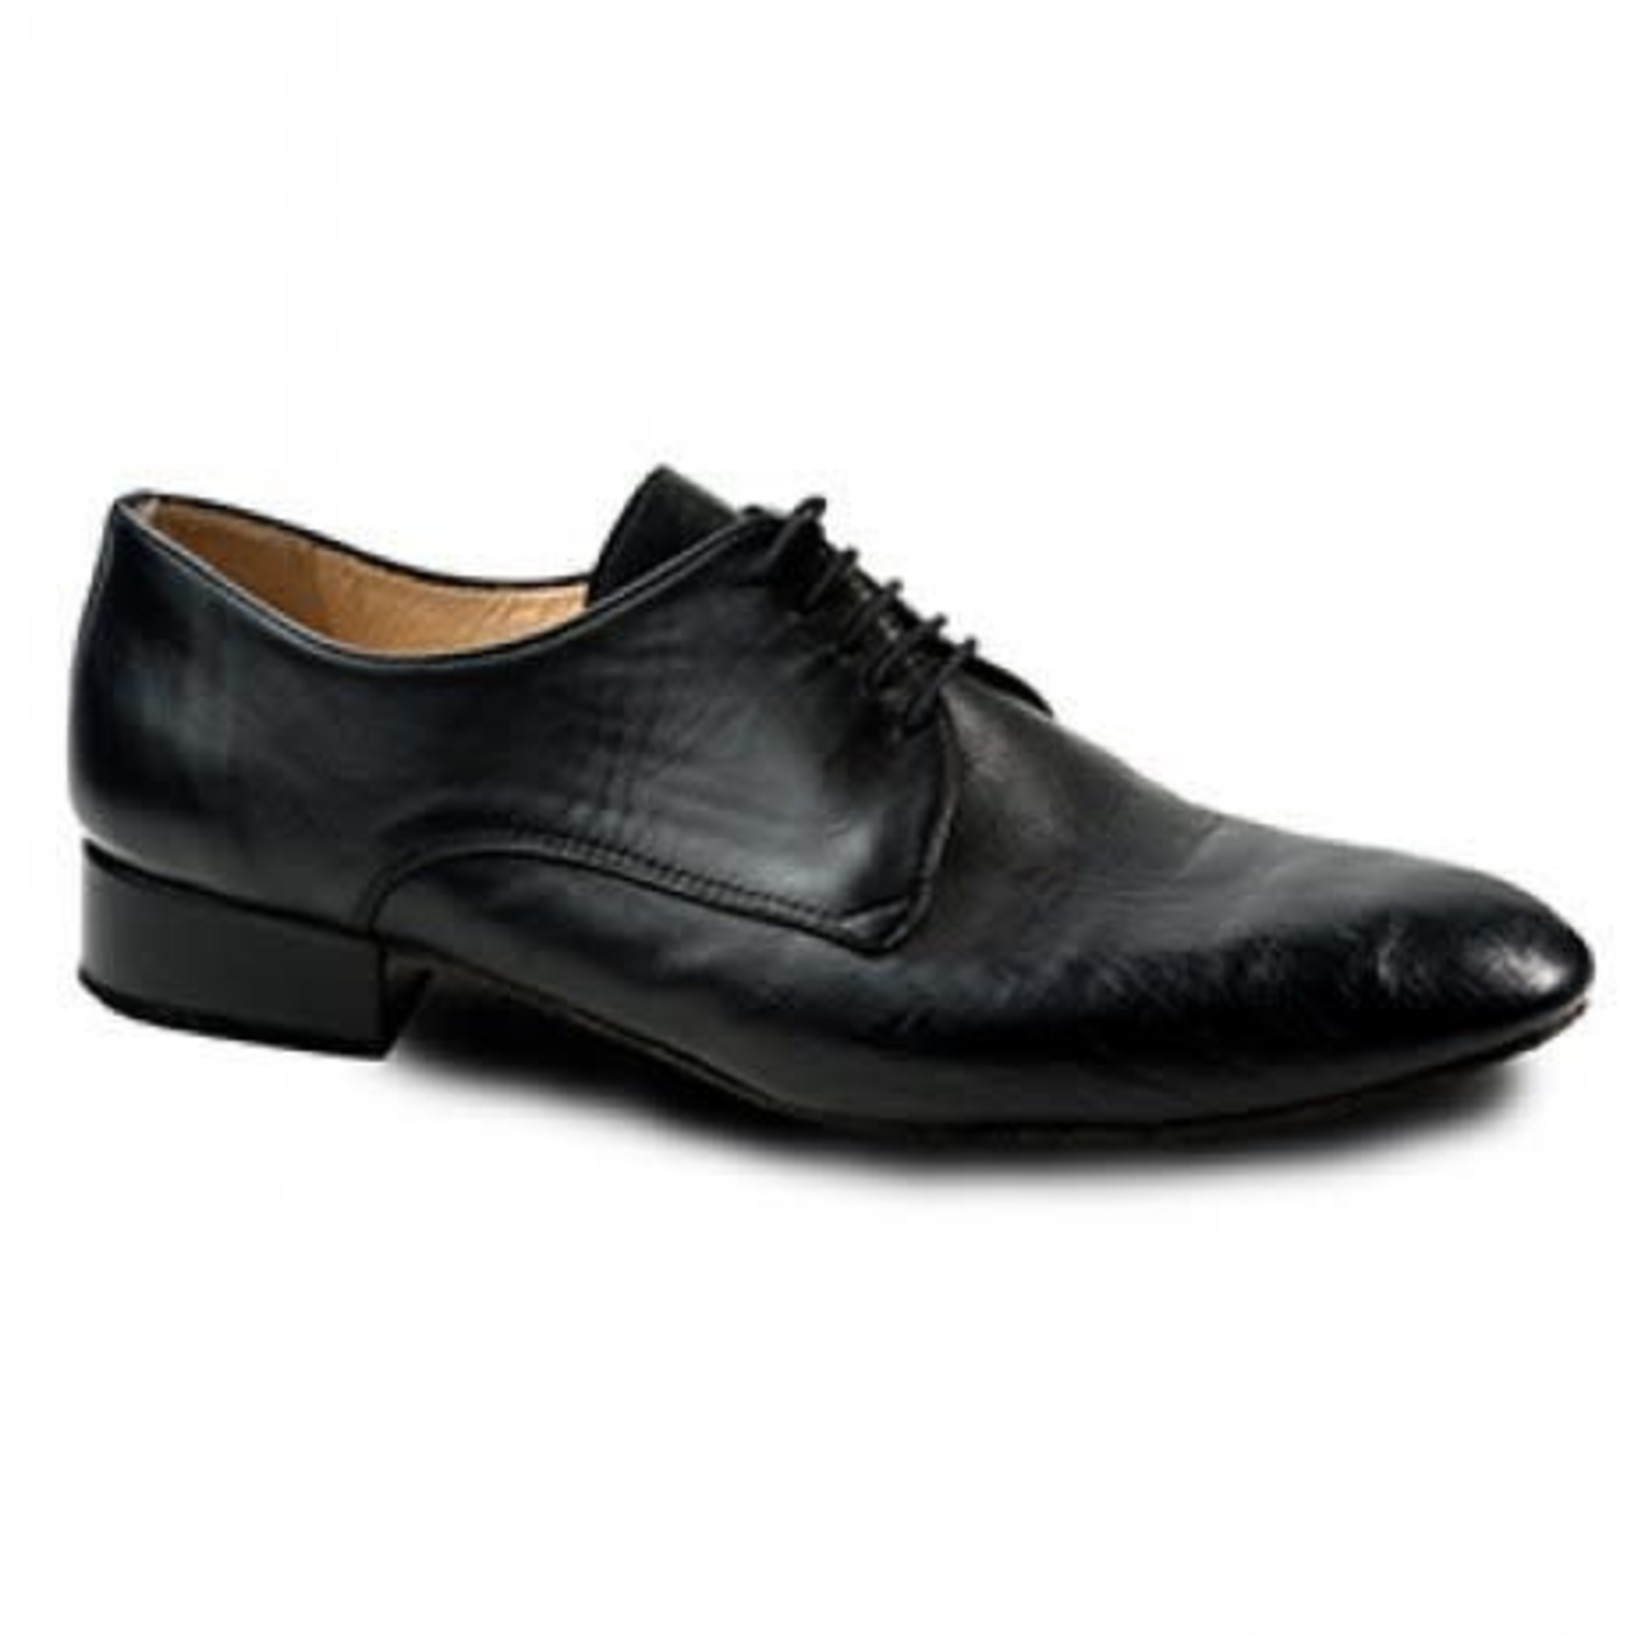 Merlet Merlet Zephir 1300 Mens Smooth Leather Ballroom Shoe